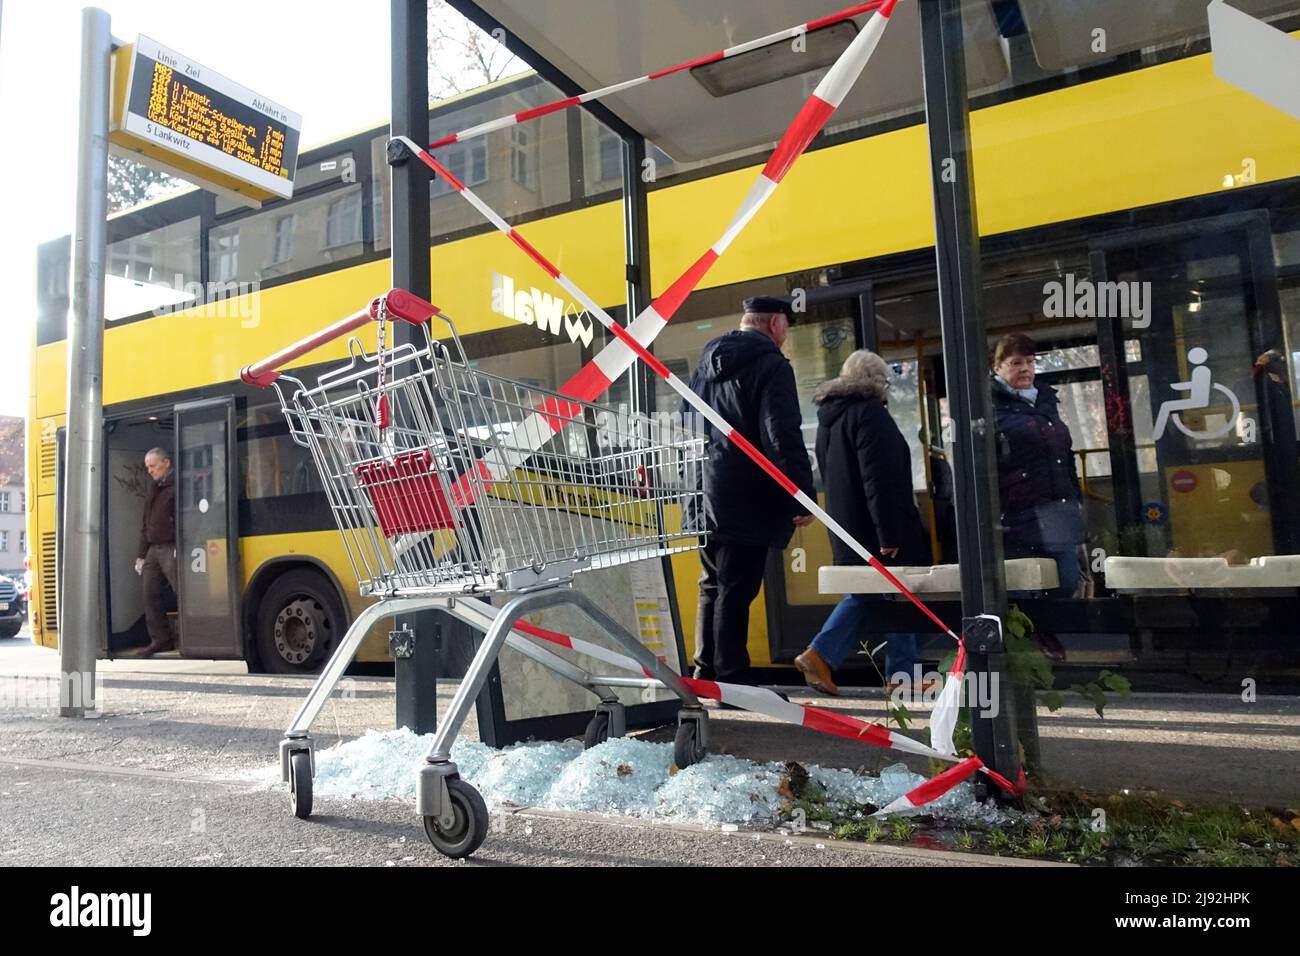 30.11.2019, Berlin, , Deutschland - Vandalismus: Glasscheibe eines BVG-Busheims wurde zerschlagen. 00S191130D147CAROEX.JPG [MODELLVERSION: NEIN, EIGENTUMSFREIGABE: Stockfoto